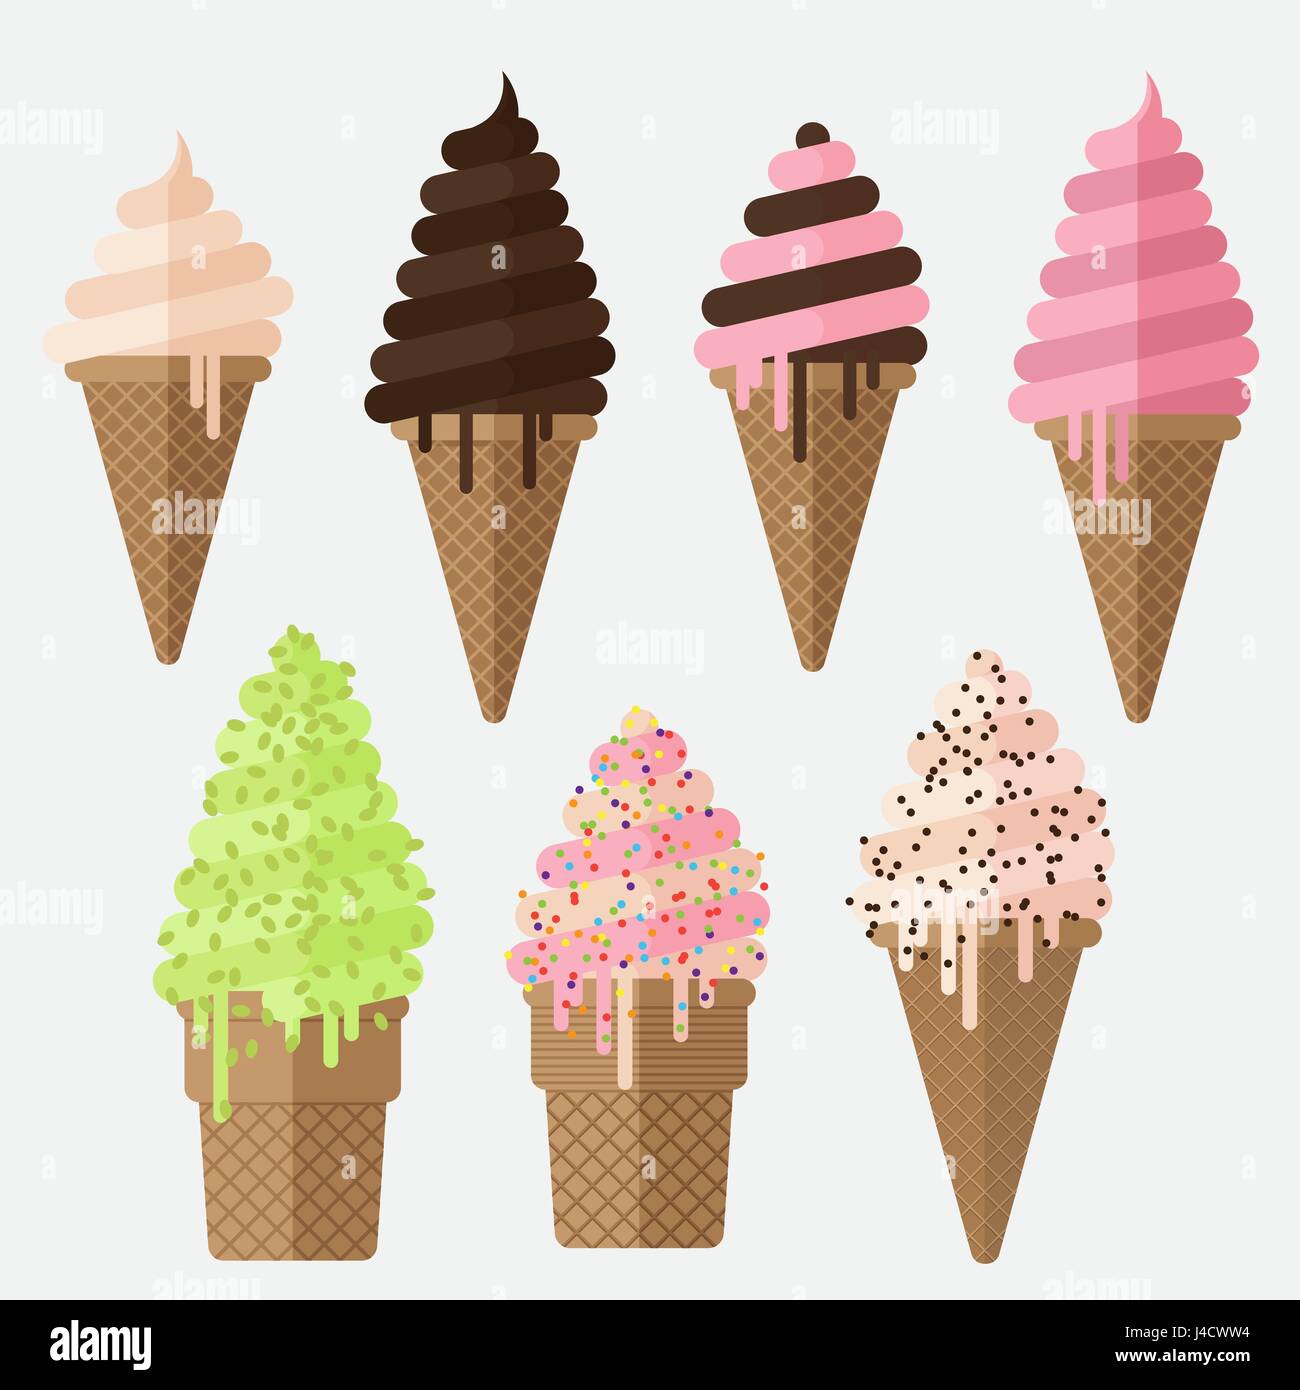 Jeu de Ice cream cone vector illustration plate. Stroberry crème glacée, chocolat et vanille cônes. Blueberry ice cream cone, Glace Pistache. Illustration de Vecteur